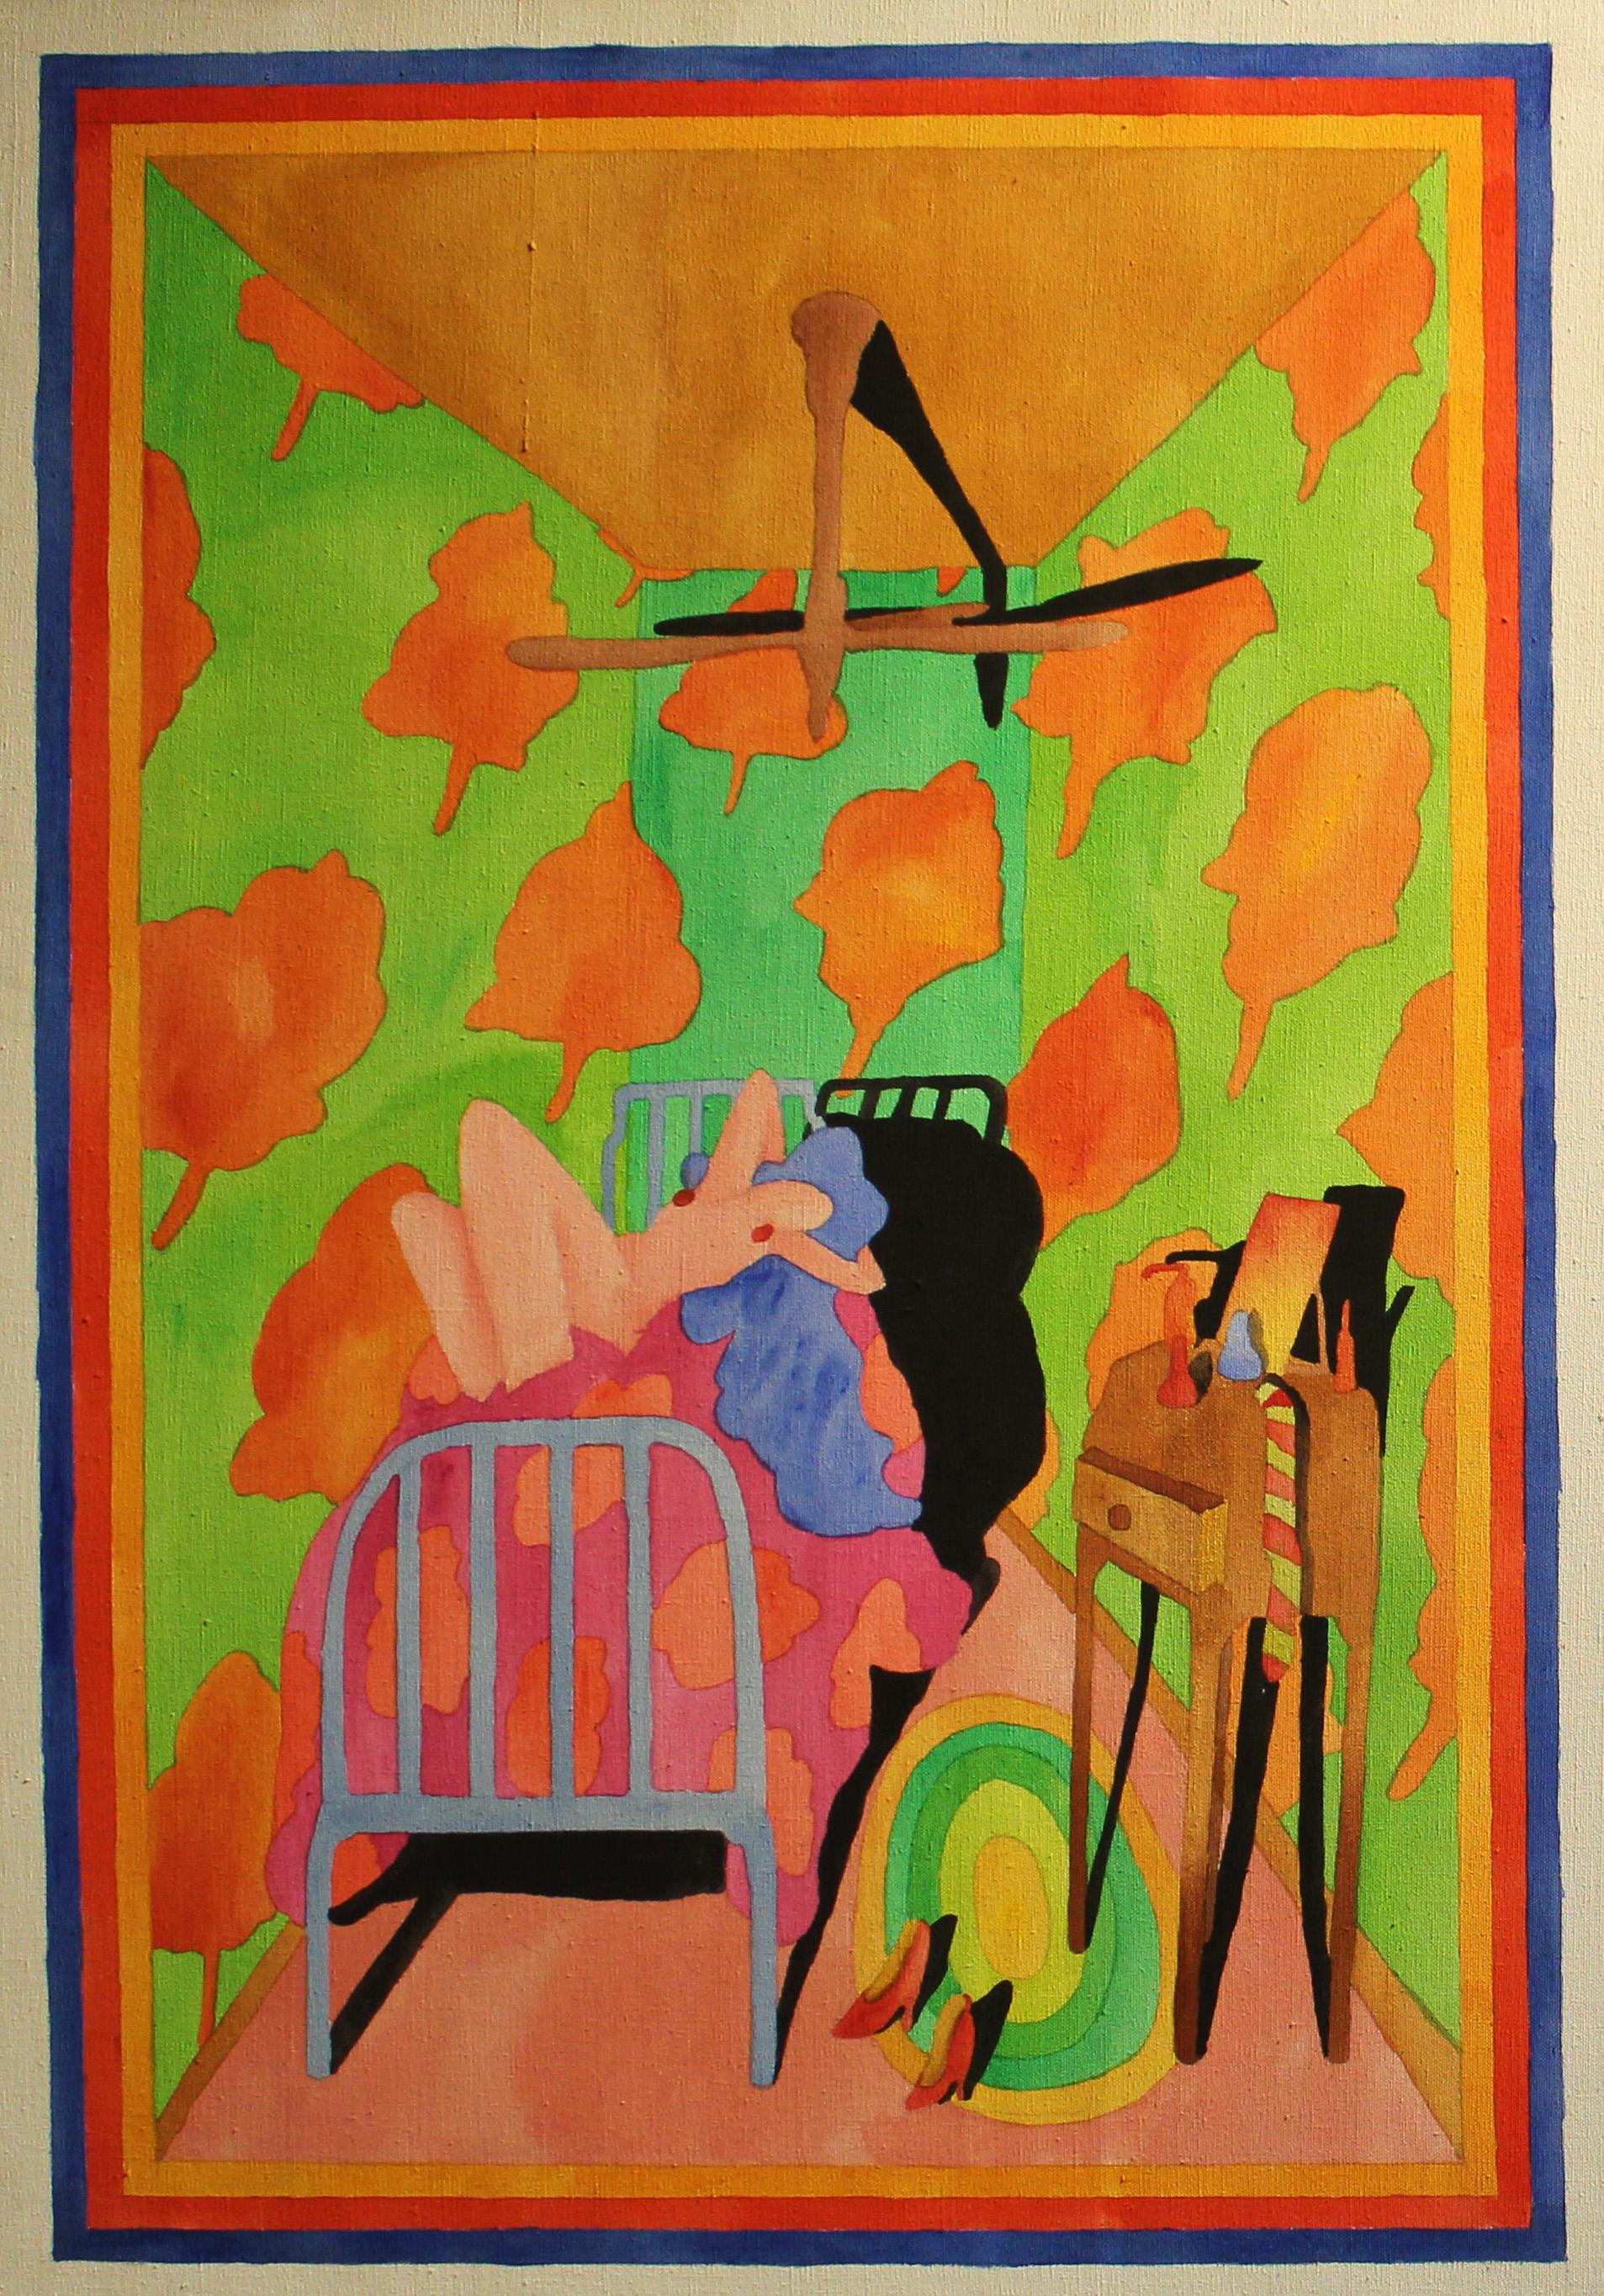 Amerikanisches Innenraum-Ölgemälde, Nude, 1970er Jahre, helle Neonfarben, Rosa, Grün, Blau   (Pop-Art), Painting, von Unknown